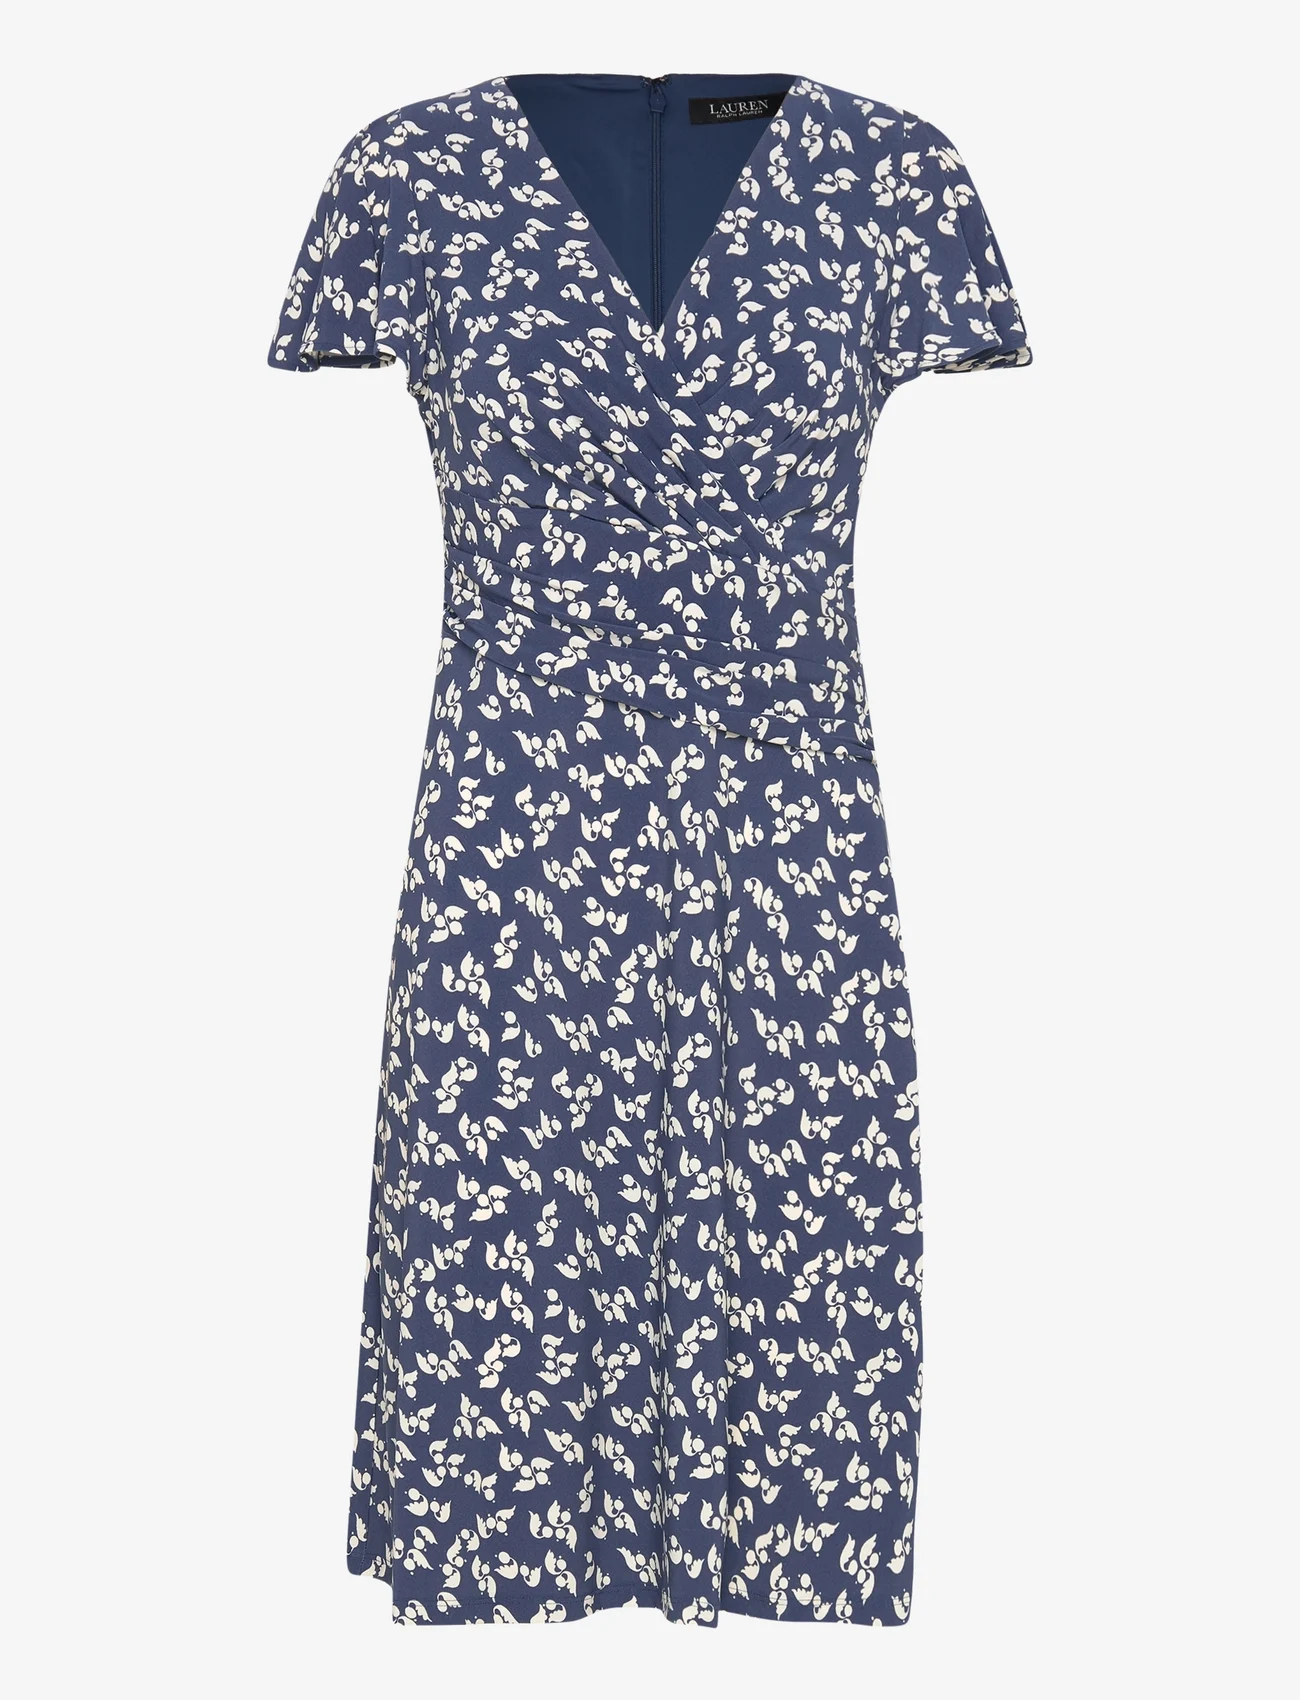 Lauren Ralph Lauren - Floral Stretch Jersey Surplice Dress - sommerkjoler - blue/cream - 0